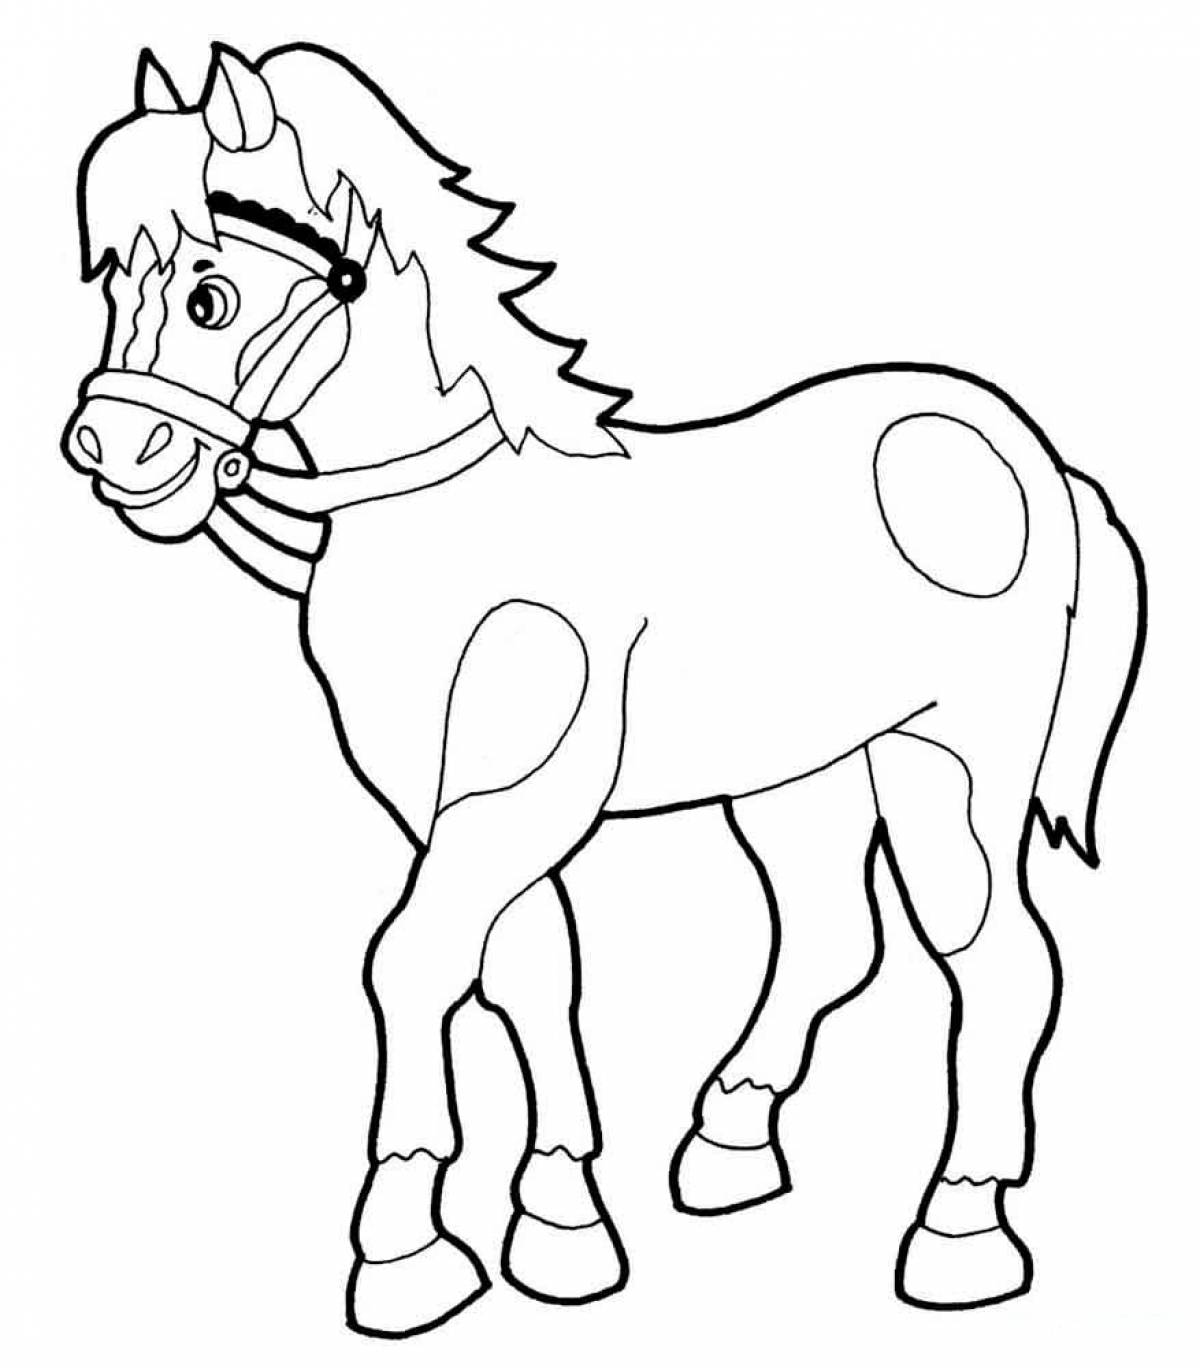 Радостная раскраска лошадь для детей